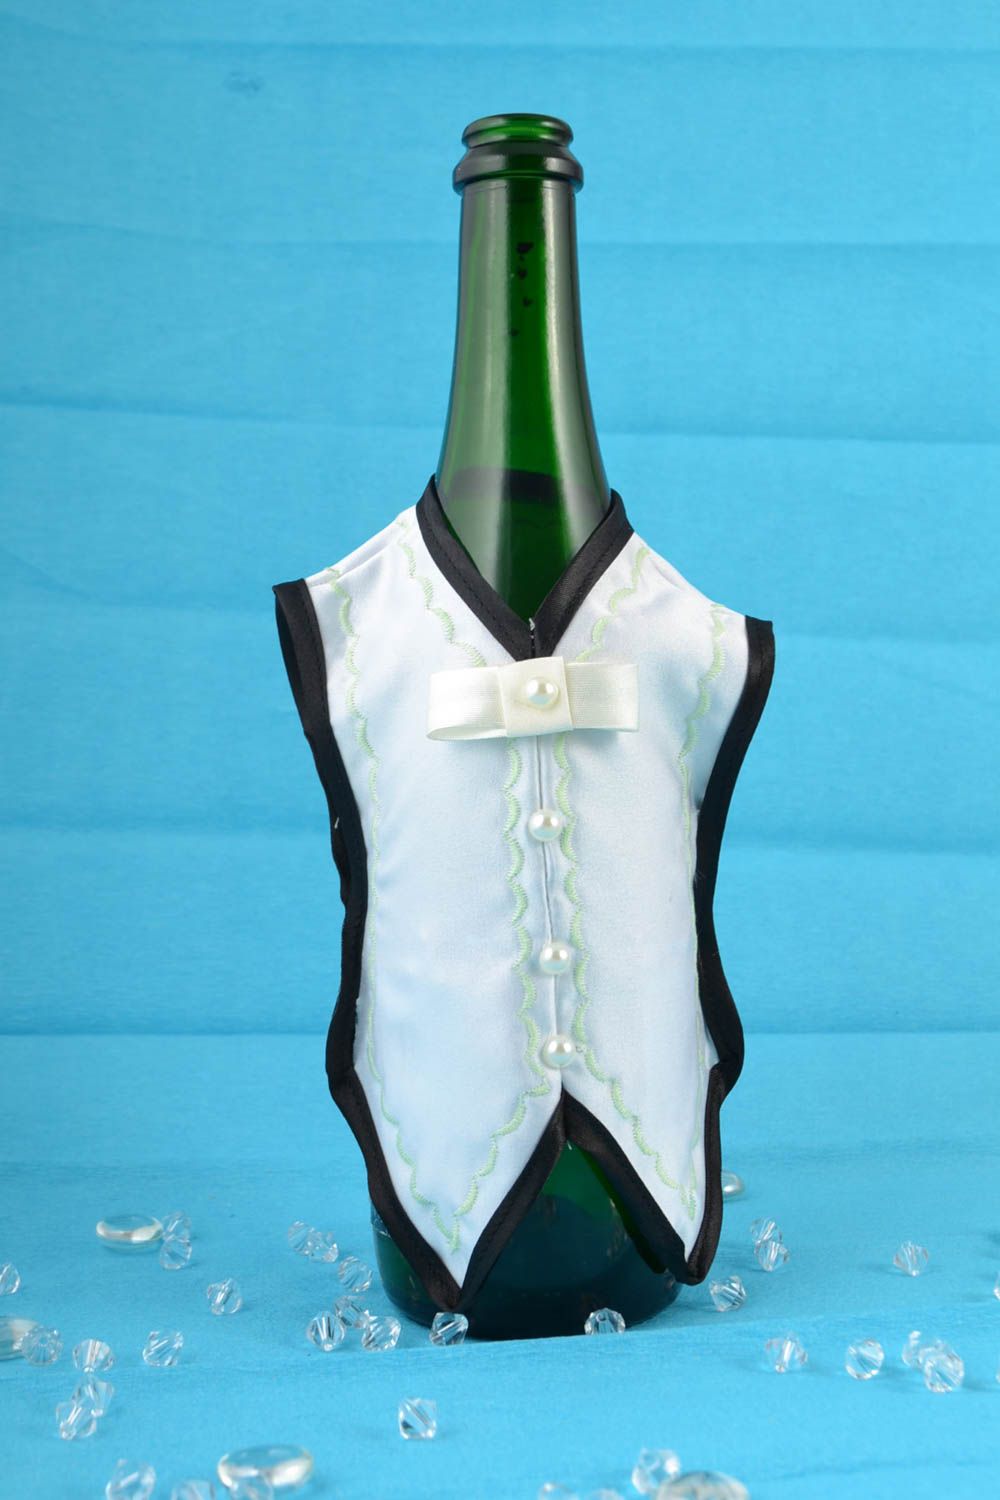 Костюм на бутылку в виде фрака или одежды жениха из атласной ткани ручная работа фото 1